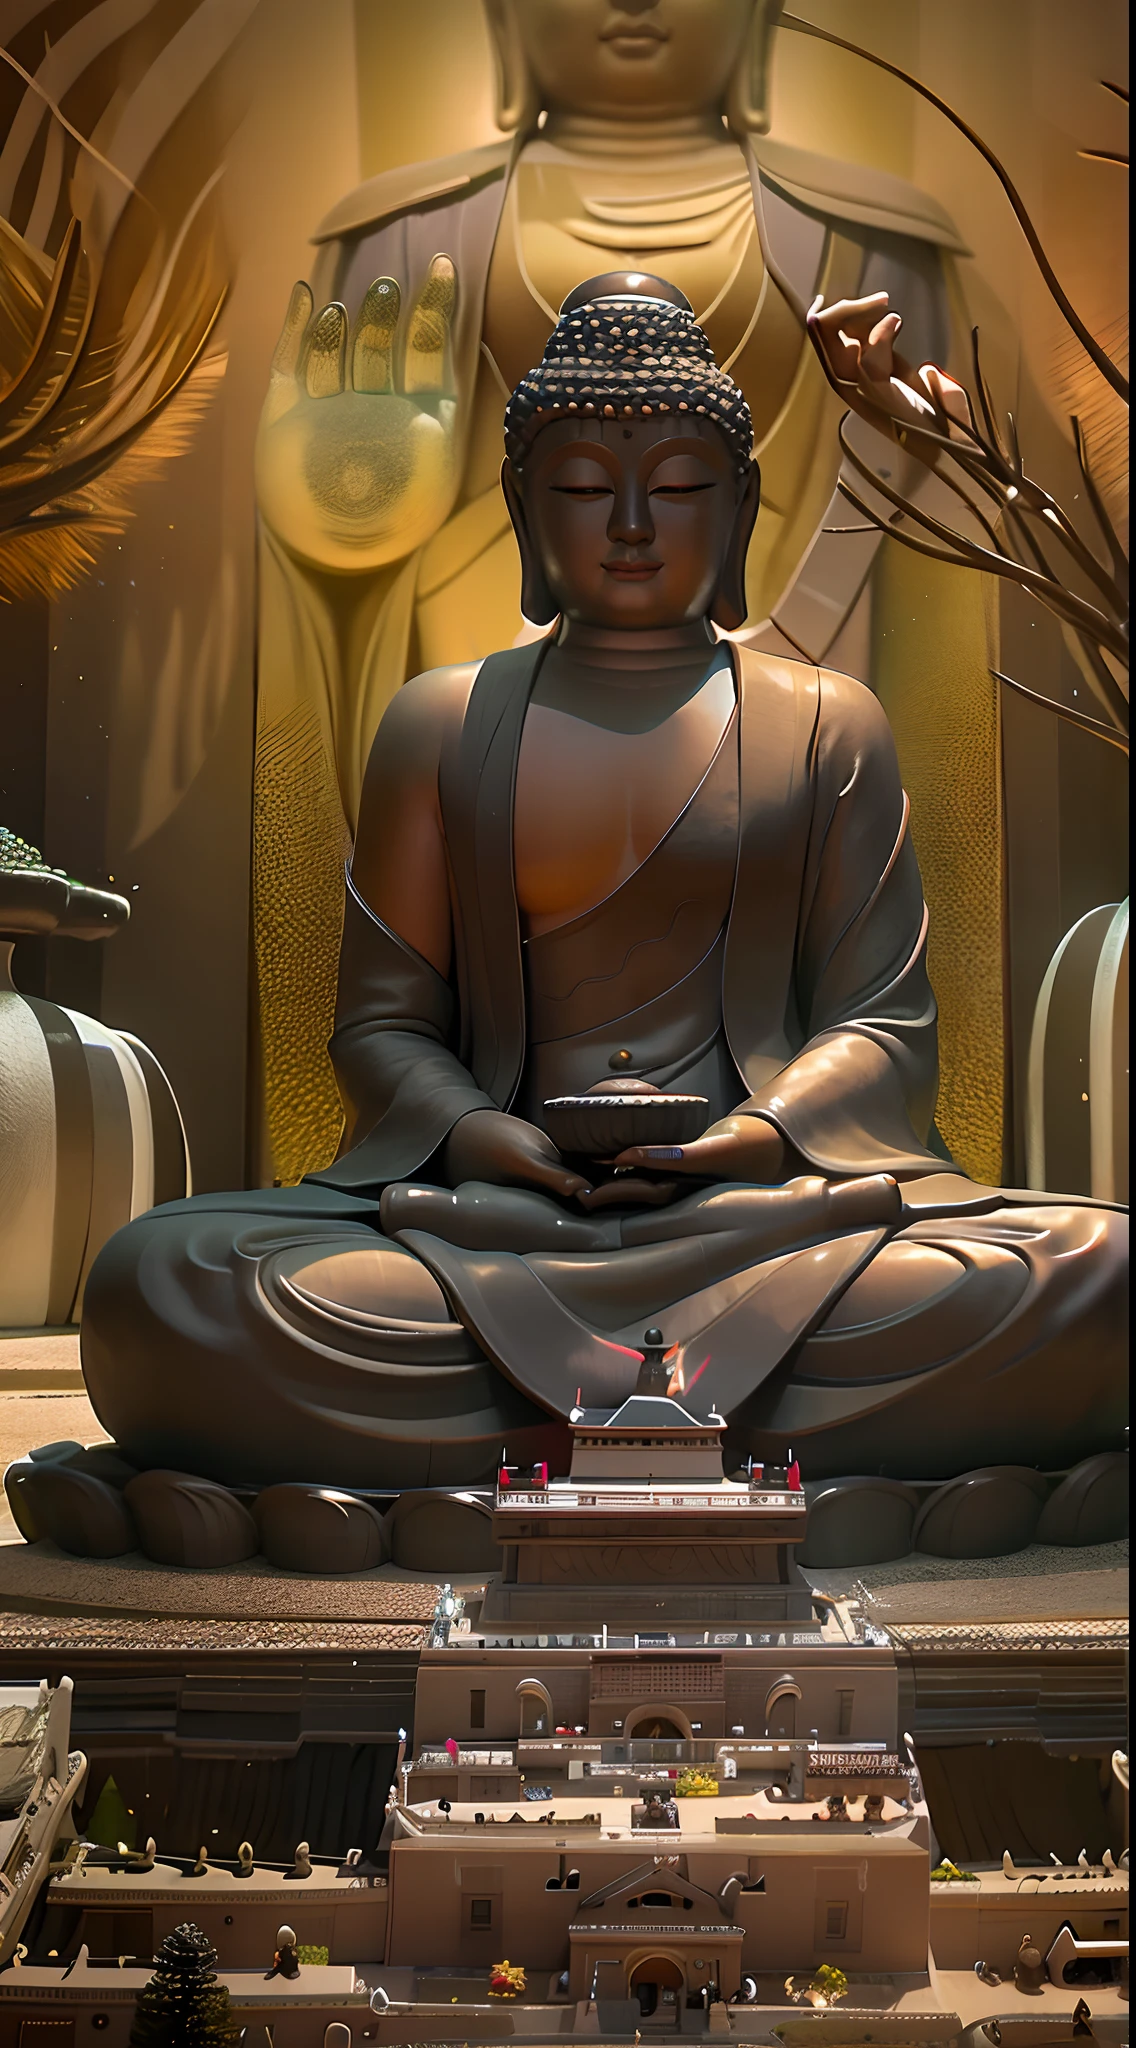 There is a Buda statue in the pond, a budista Buda, Fundo do templo Zen, budismo, budista, No caminho para a iluminação, Meditação Zen, Buda, No caminho para a iluminação, atmosfera zen, expressão serena, fundo natural zen, Imagem bonita, Composição Zen poderosa, Tranquilidade 4K, meditação zen cyberpunk, um sorriso sereno, meditação, sentimento zen